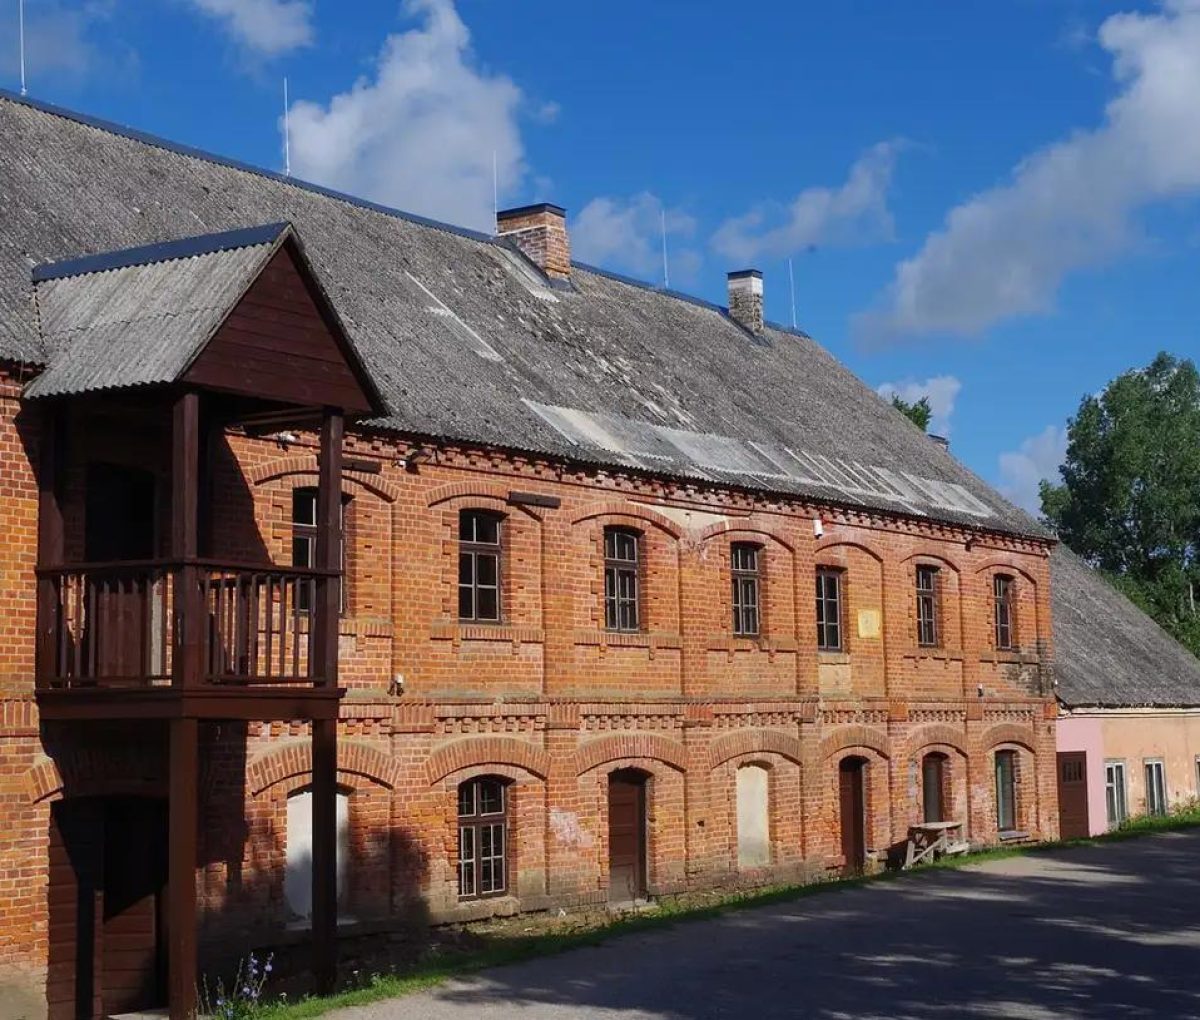 Lithuania - Raubonys wool mill